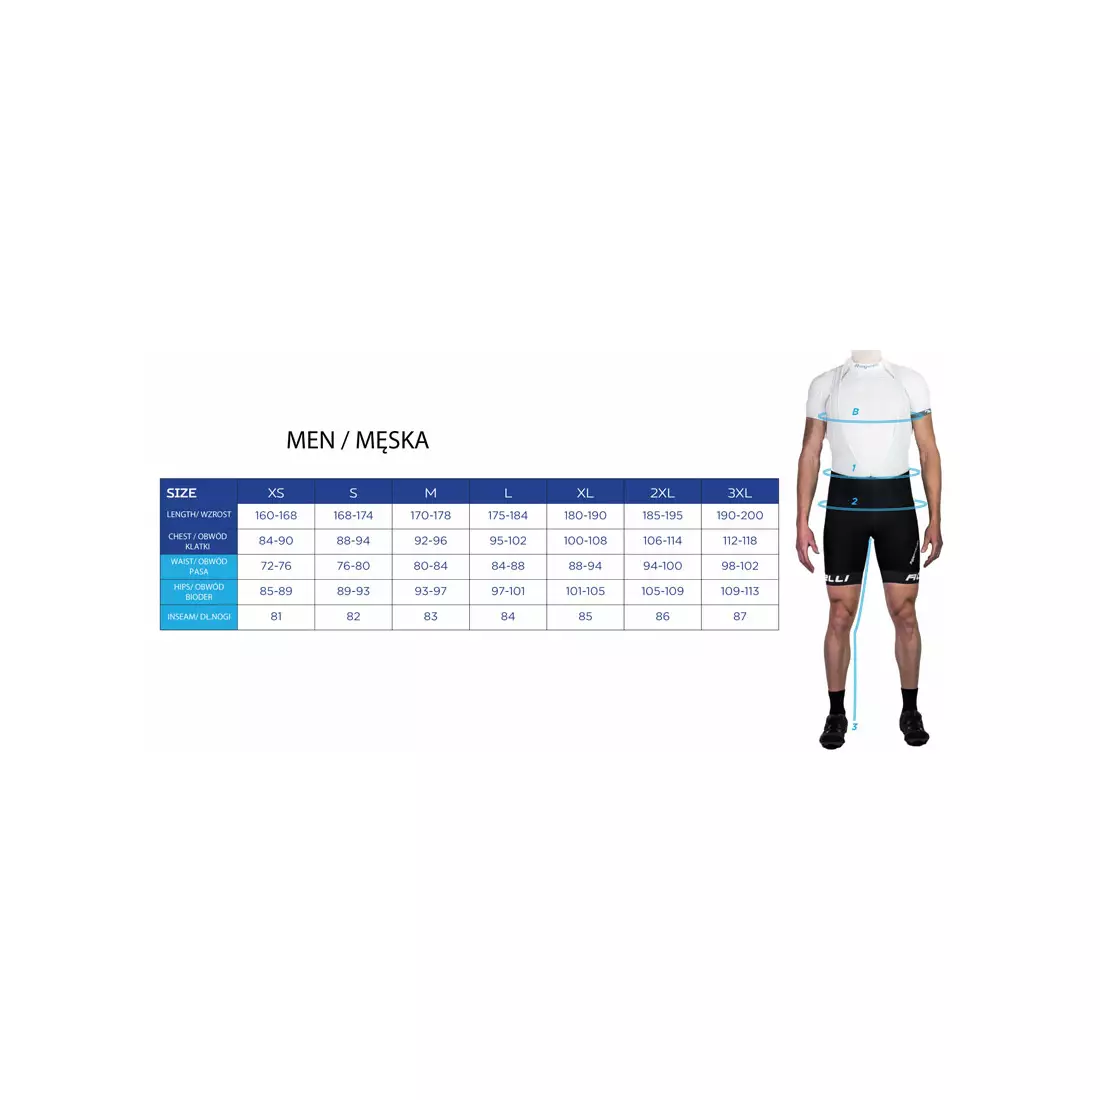 ROGELLI BIKE 070.102 men's cycling boxer shorts, seamless